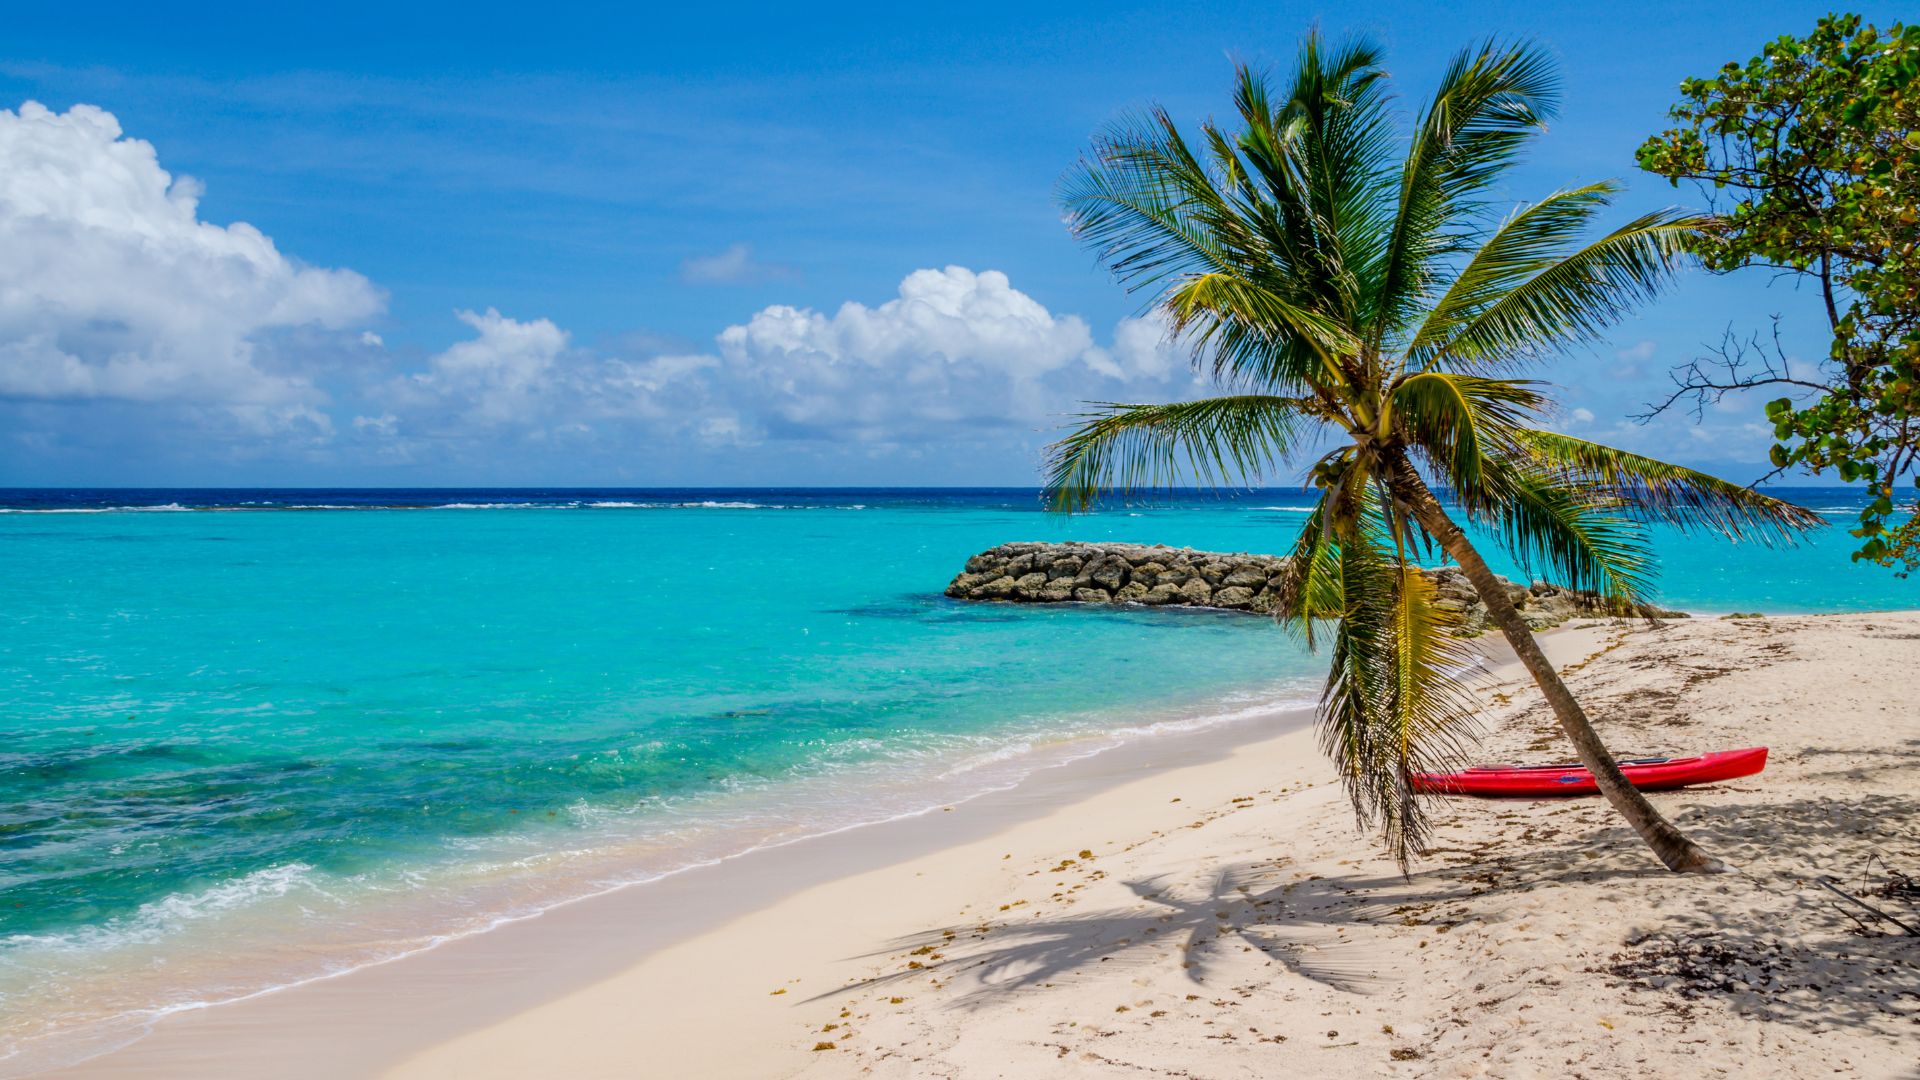 Vacances en Guadeloupe-Plage de sable fin et palmiers avec une eau turquoise